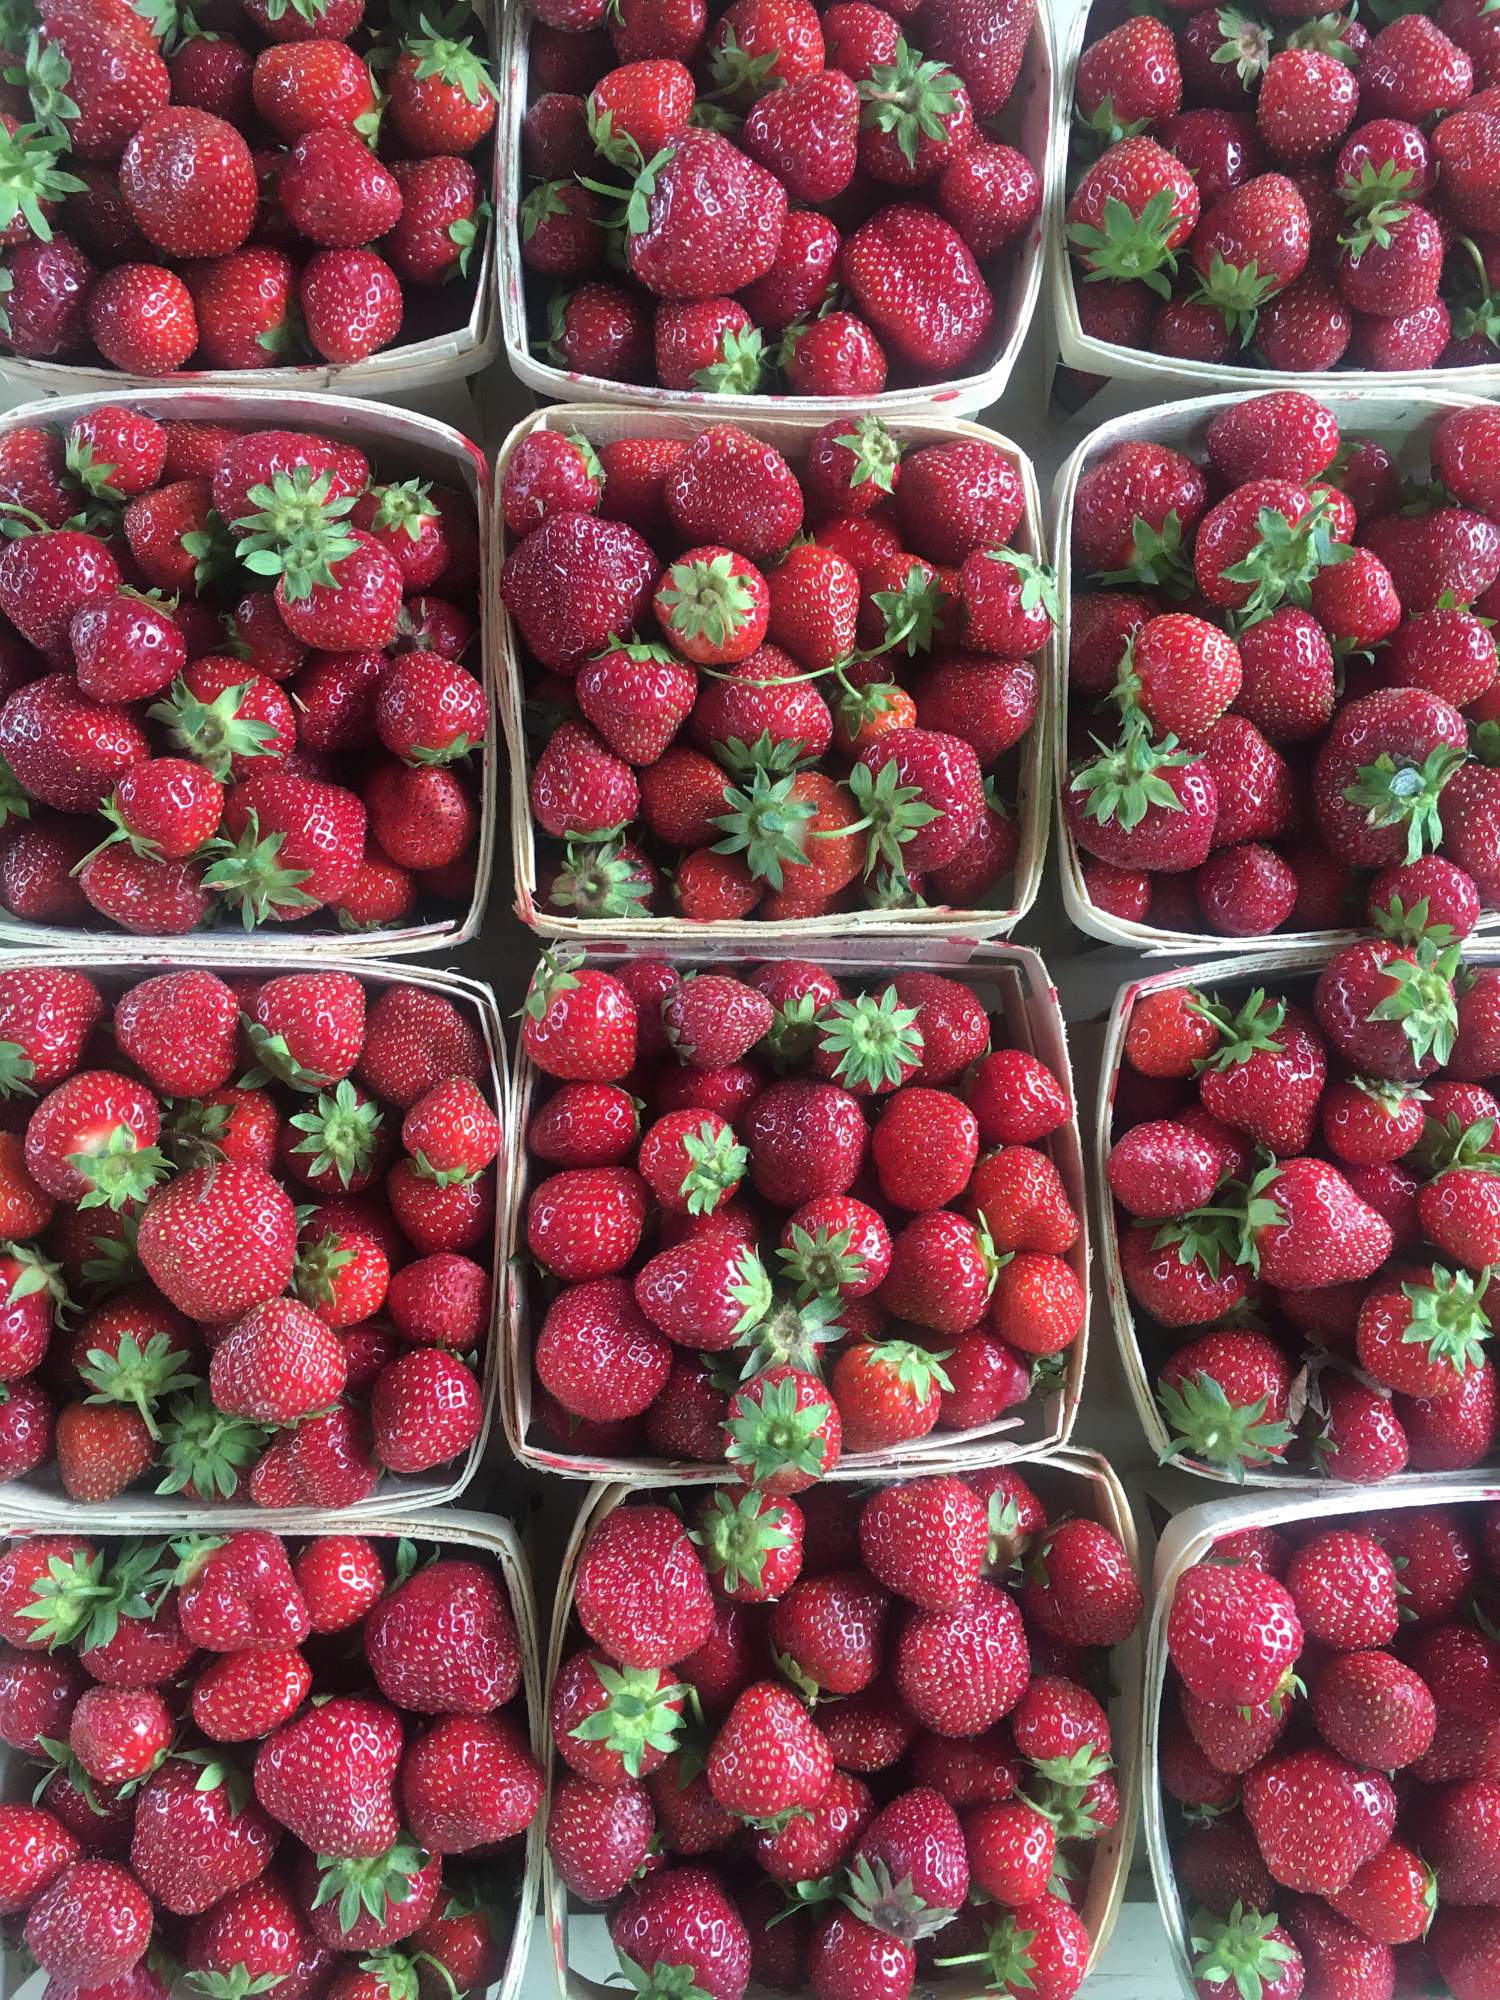 Strawberries of Québec's Île d'Orléans